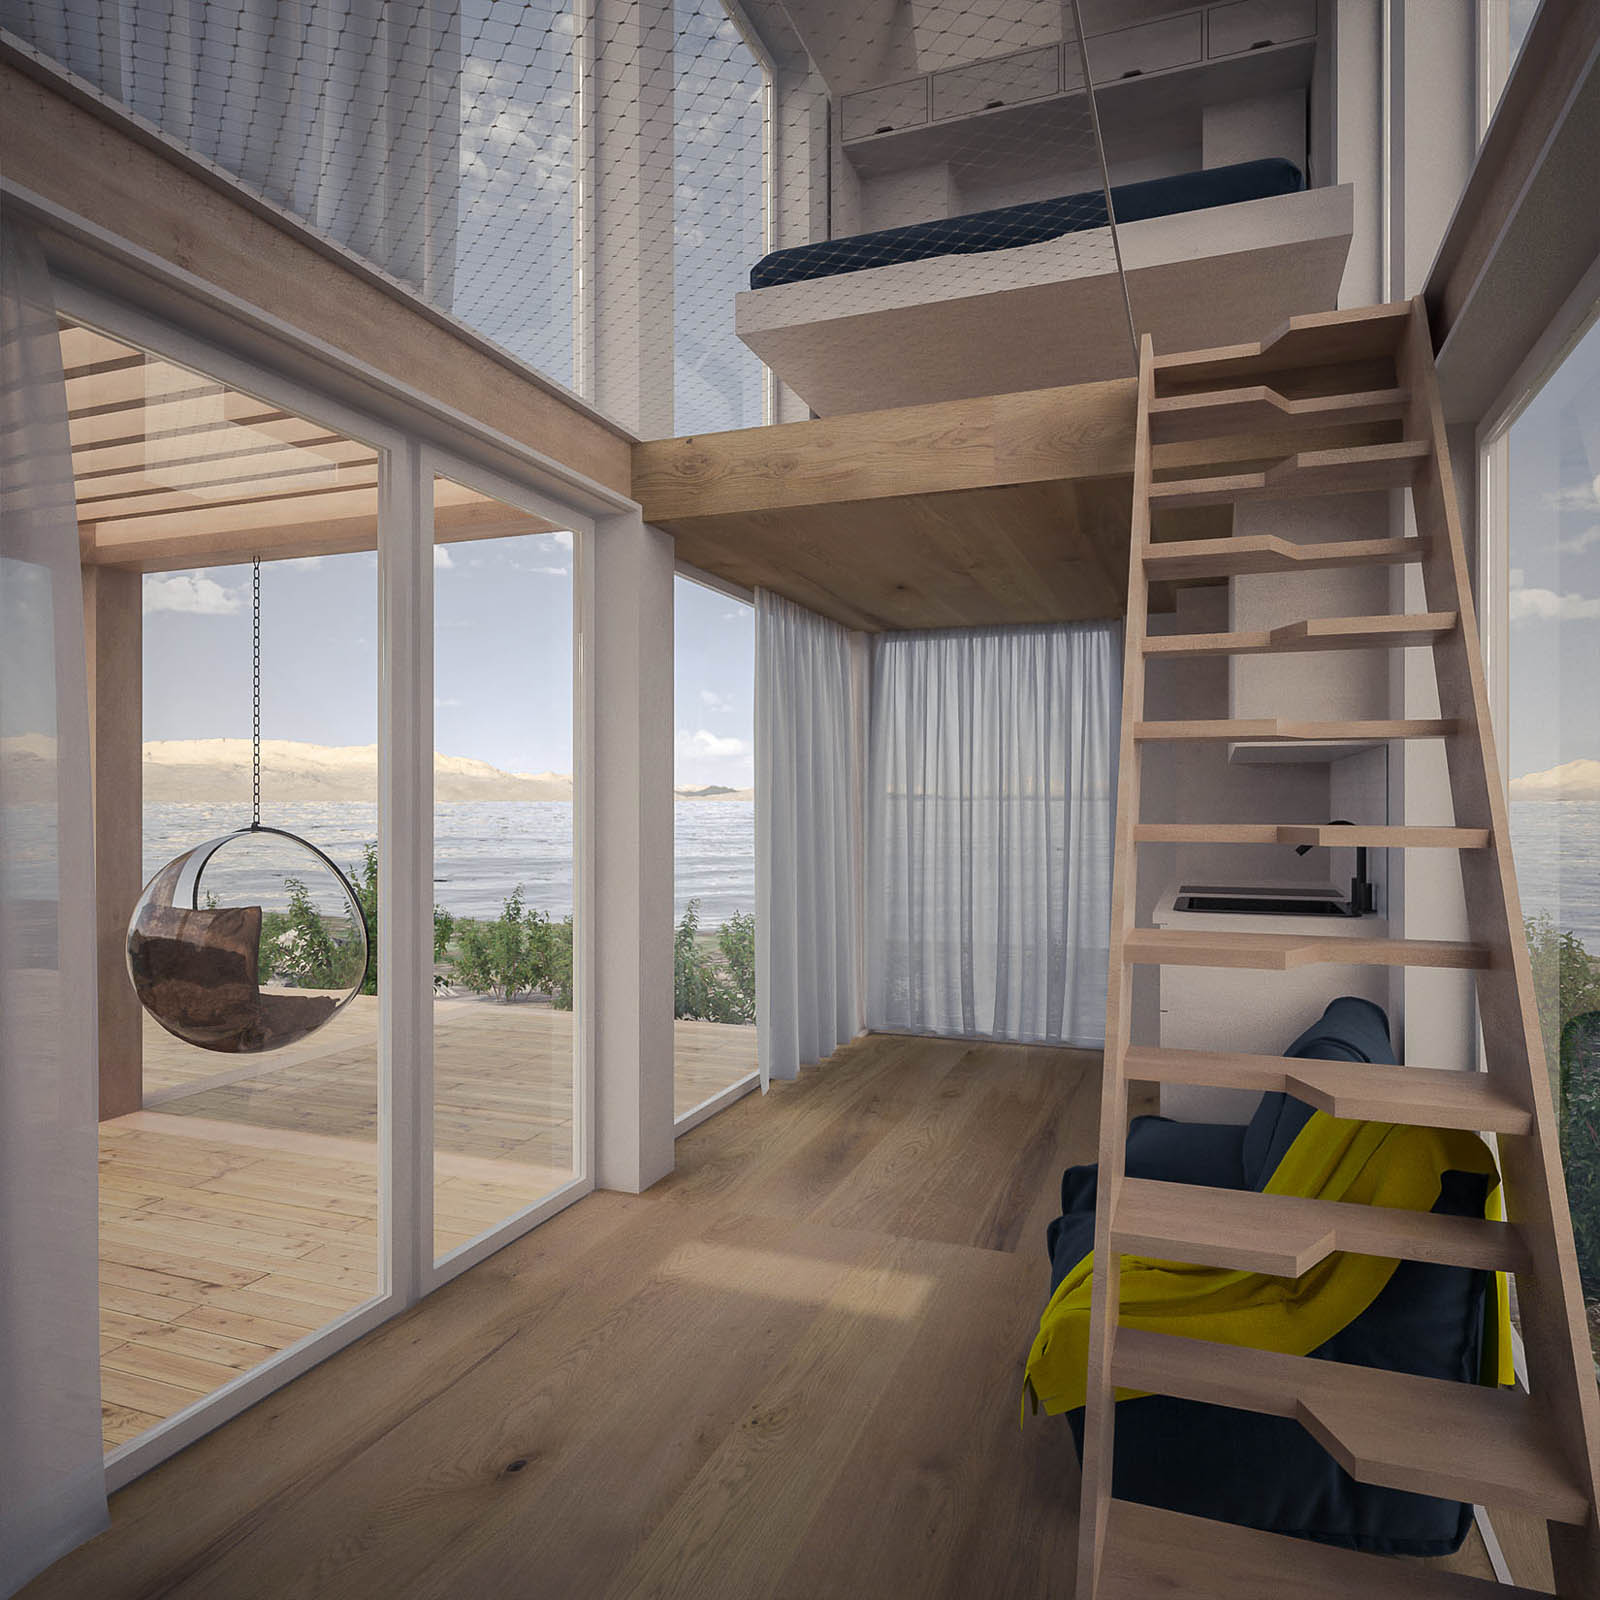 Modular home concept